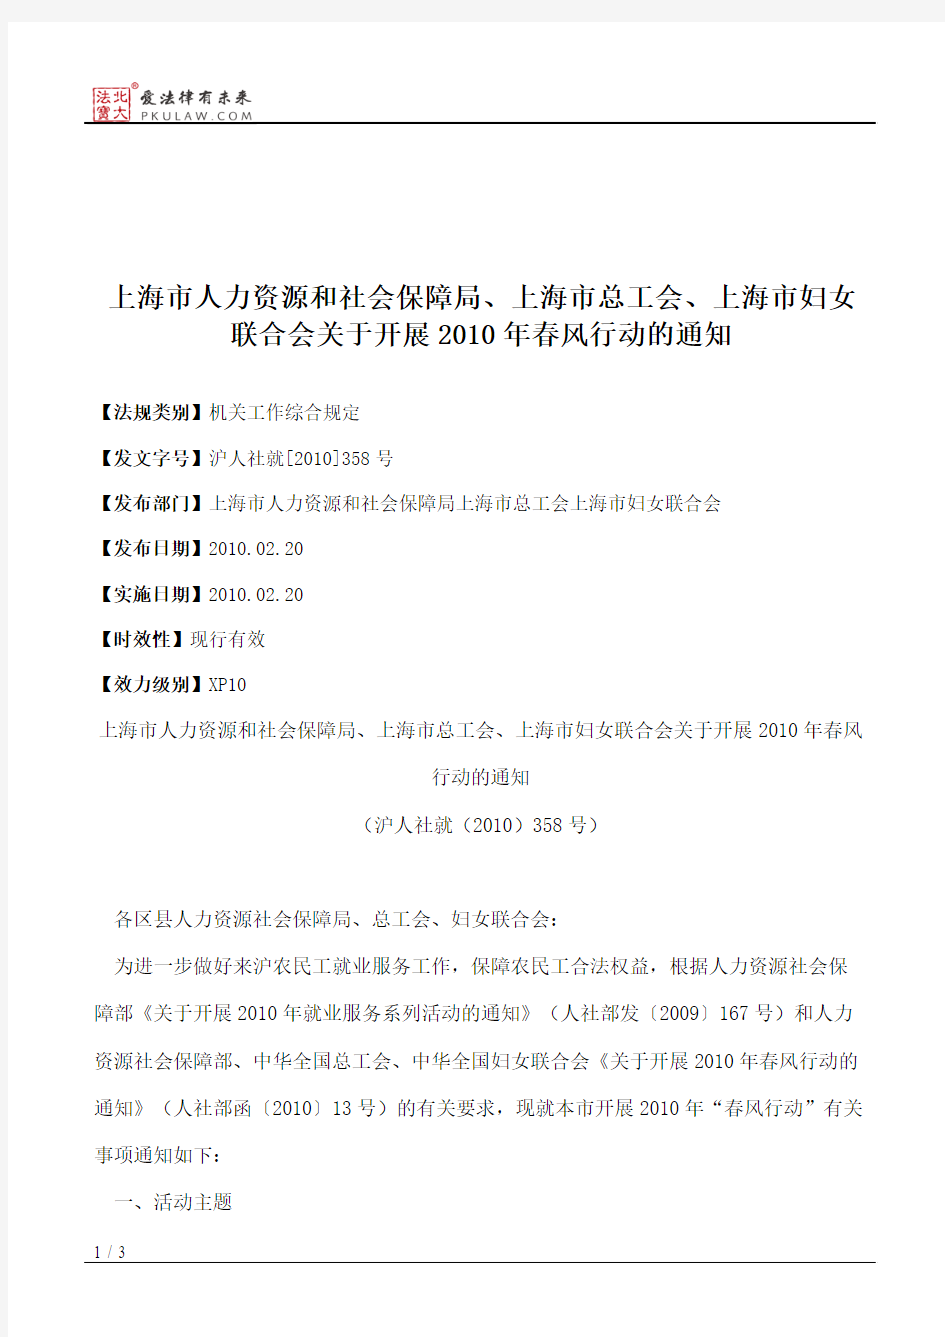 上海市人力资源和社会保障局、上海市总工会、上海市妇女联合会关